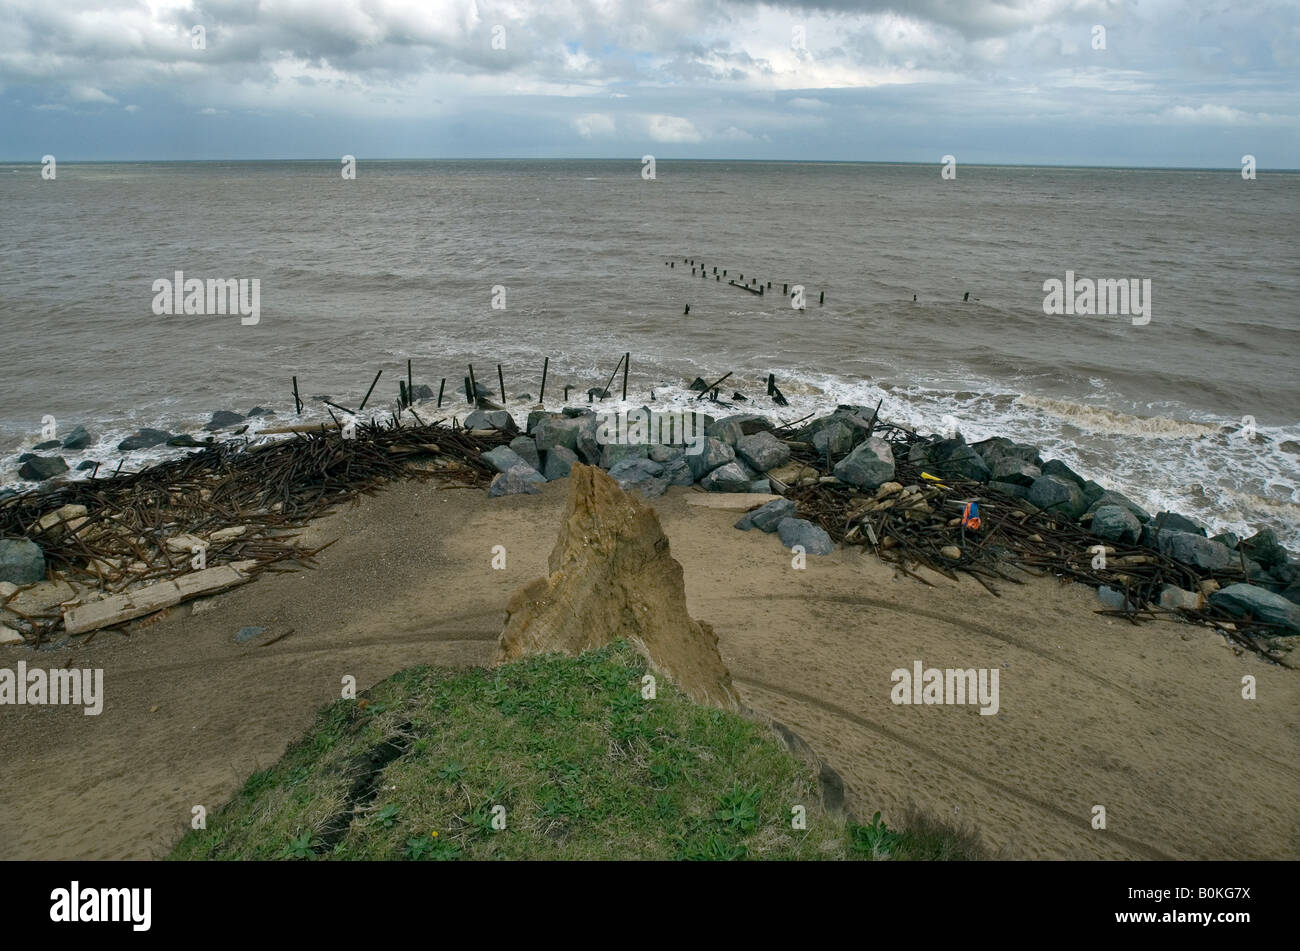 La Grande-Bretagne Angleterre Royaume-Uni érosion Érosion côtière plage mer réchauffement de la chute spectaculaire de l'Norfolk Happisburgh Assurance Maisons Falaise Banque D'Images